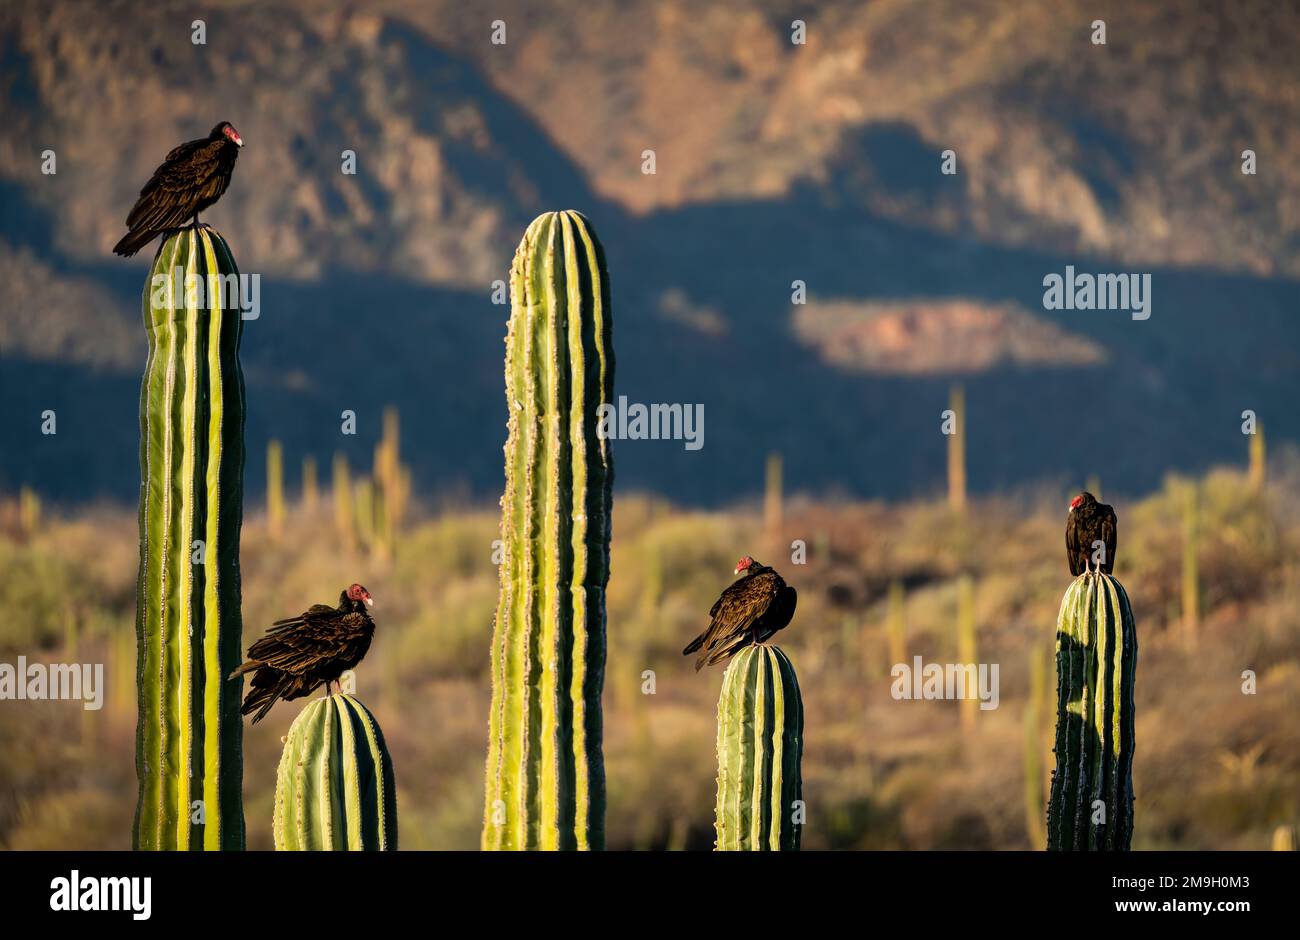 Groupe de vautours de turquie (Cathartes aura) perçant sur des cactus dans le désert, Baja California sur, Mexique Banque D'Images